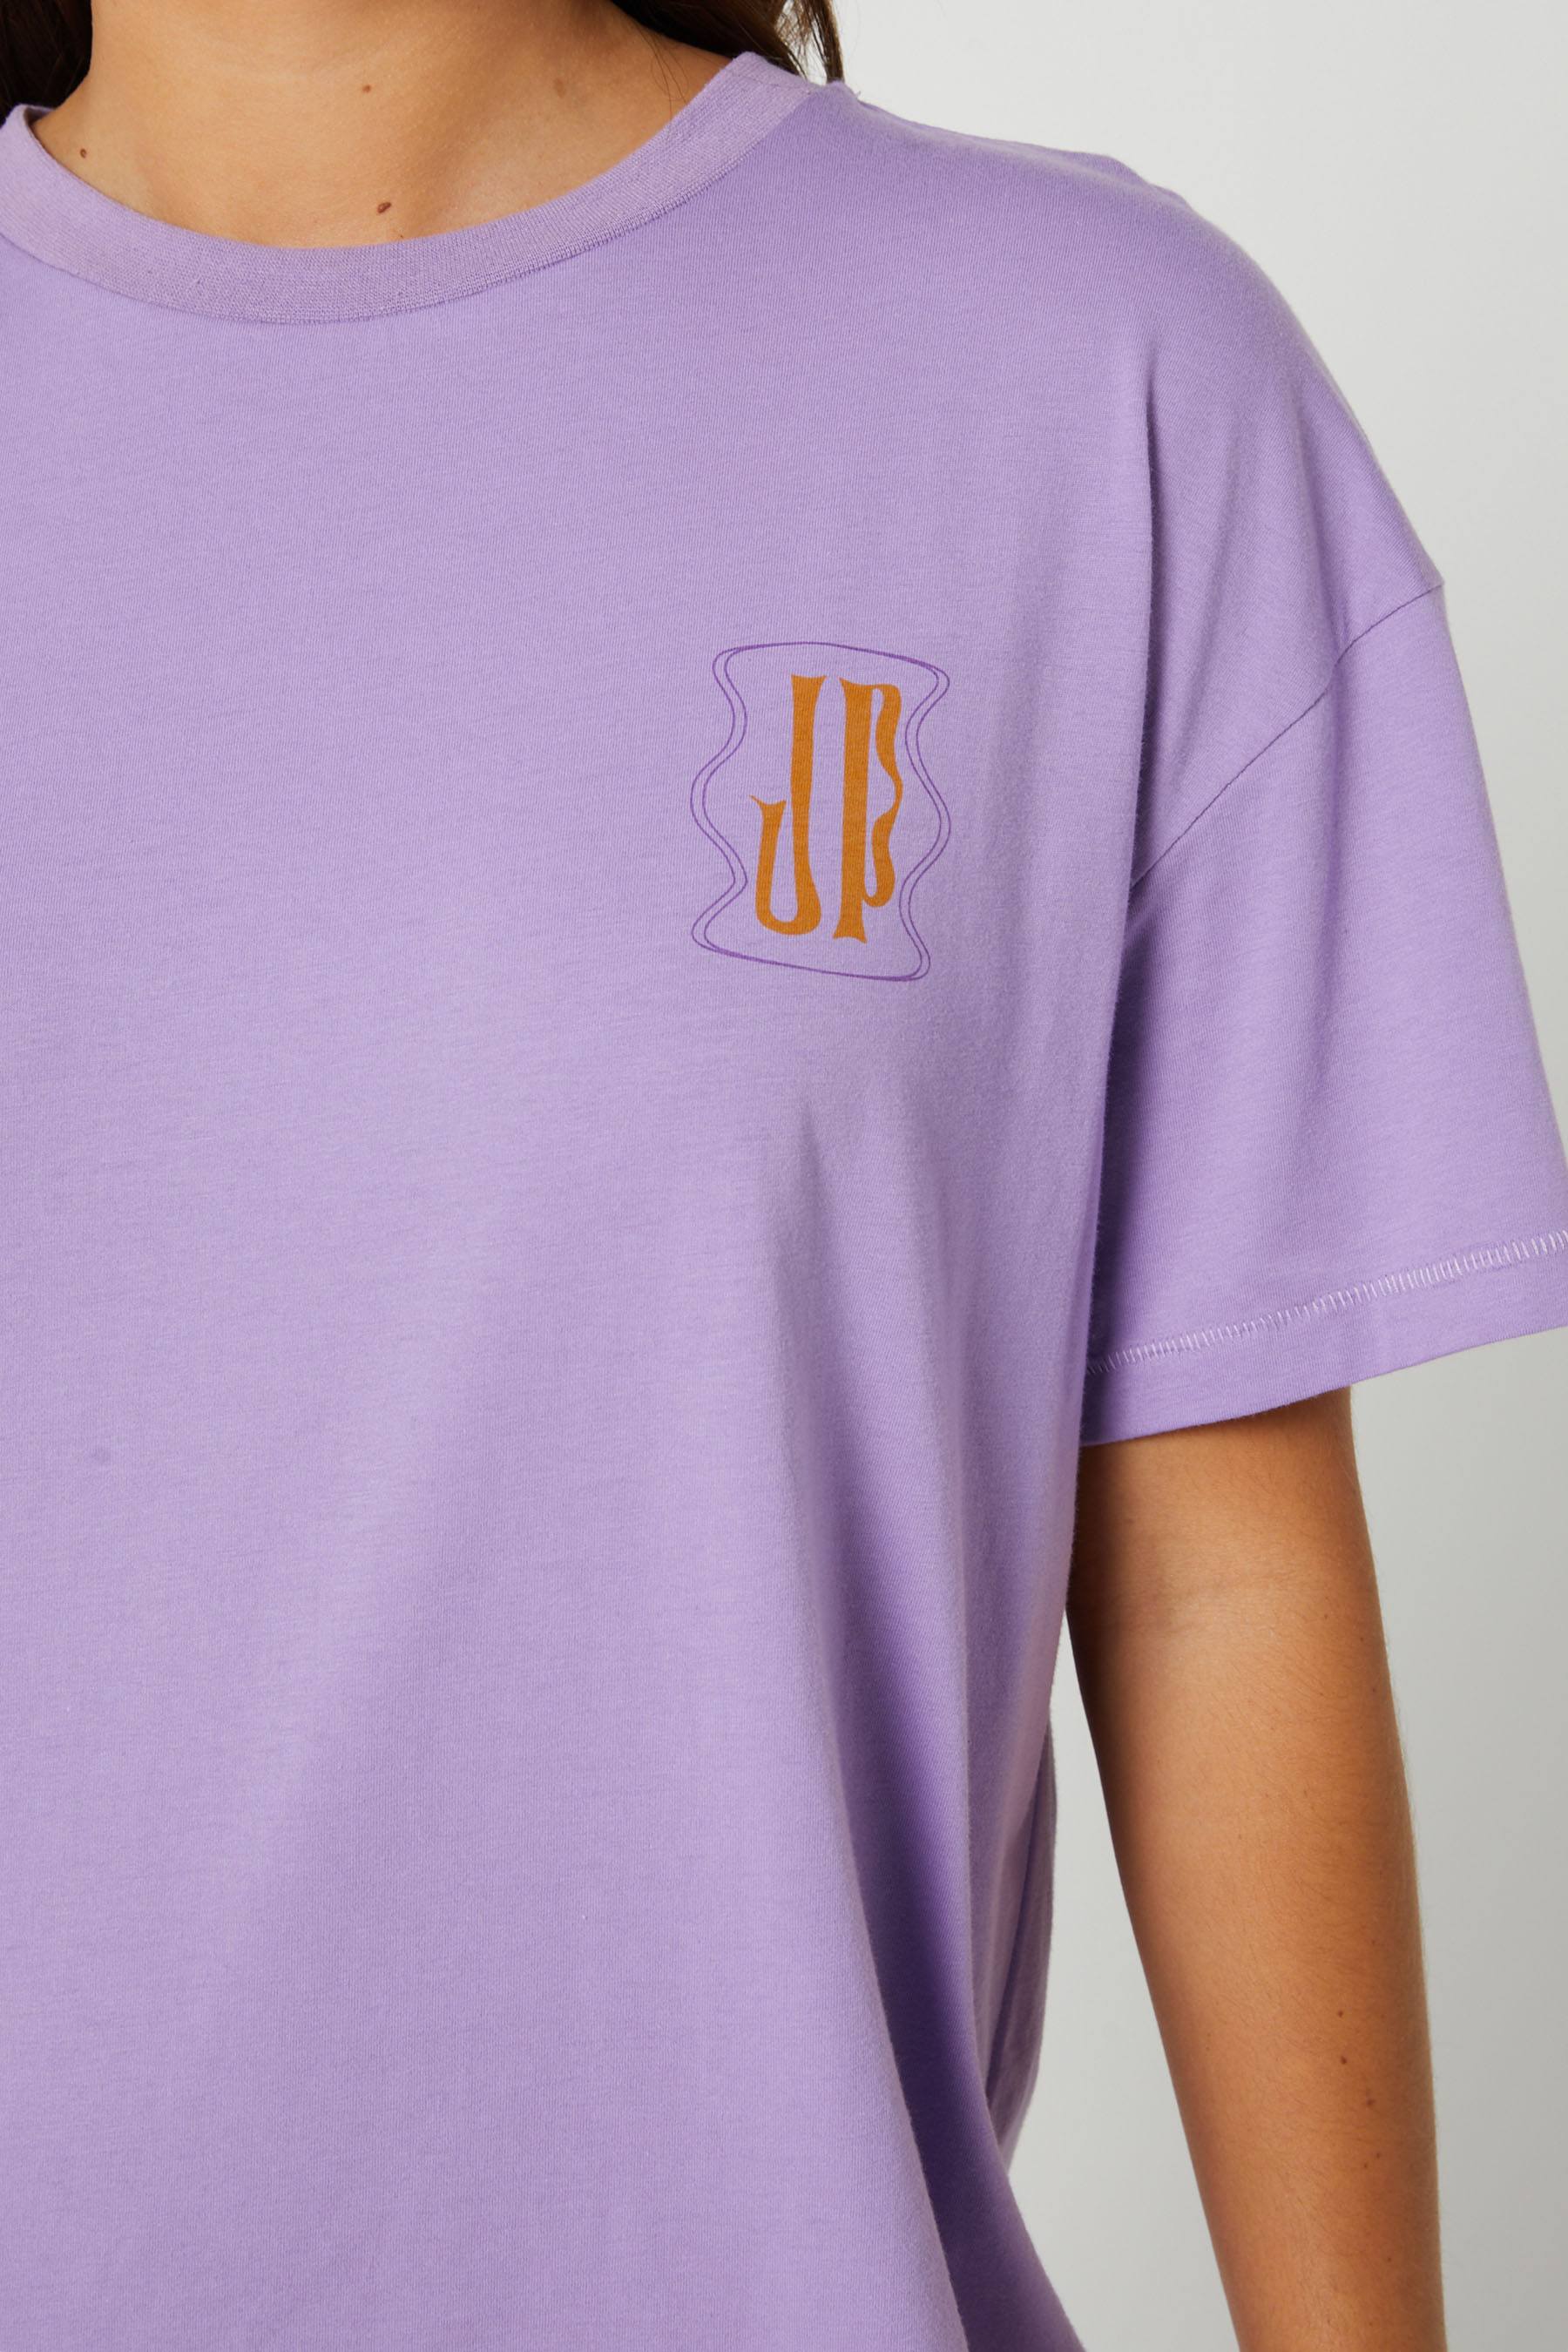 Jetpilot x Sina Eyes - Ladies SS T-Shirt